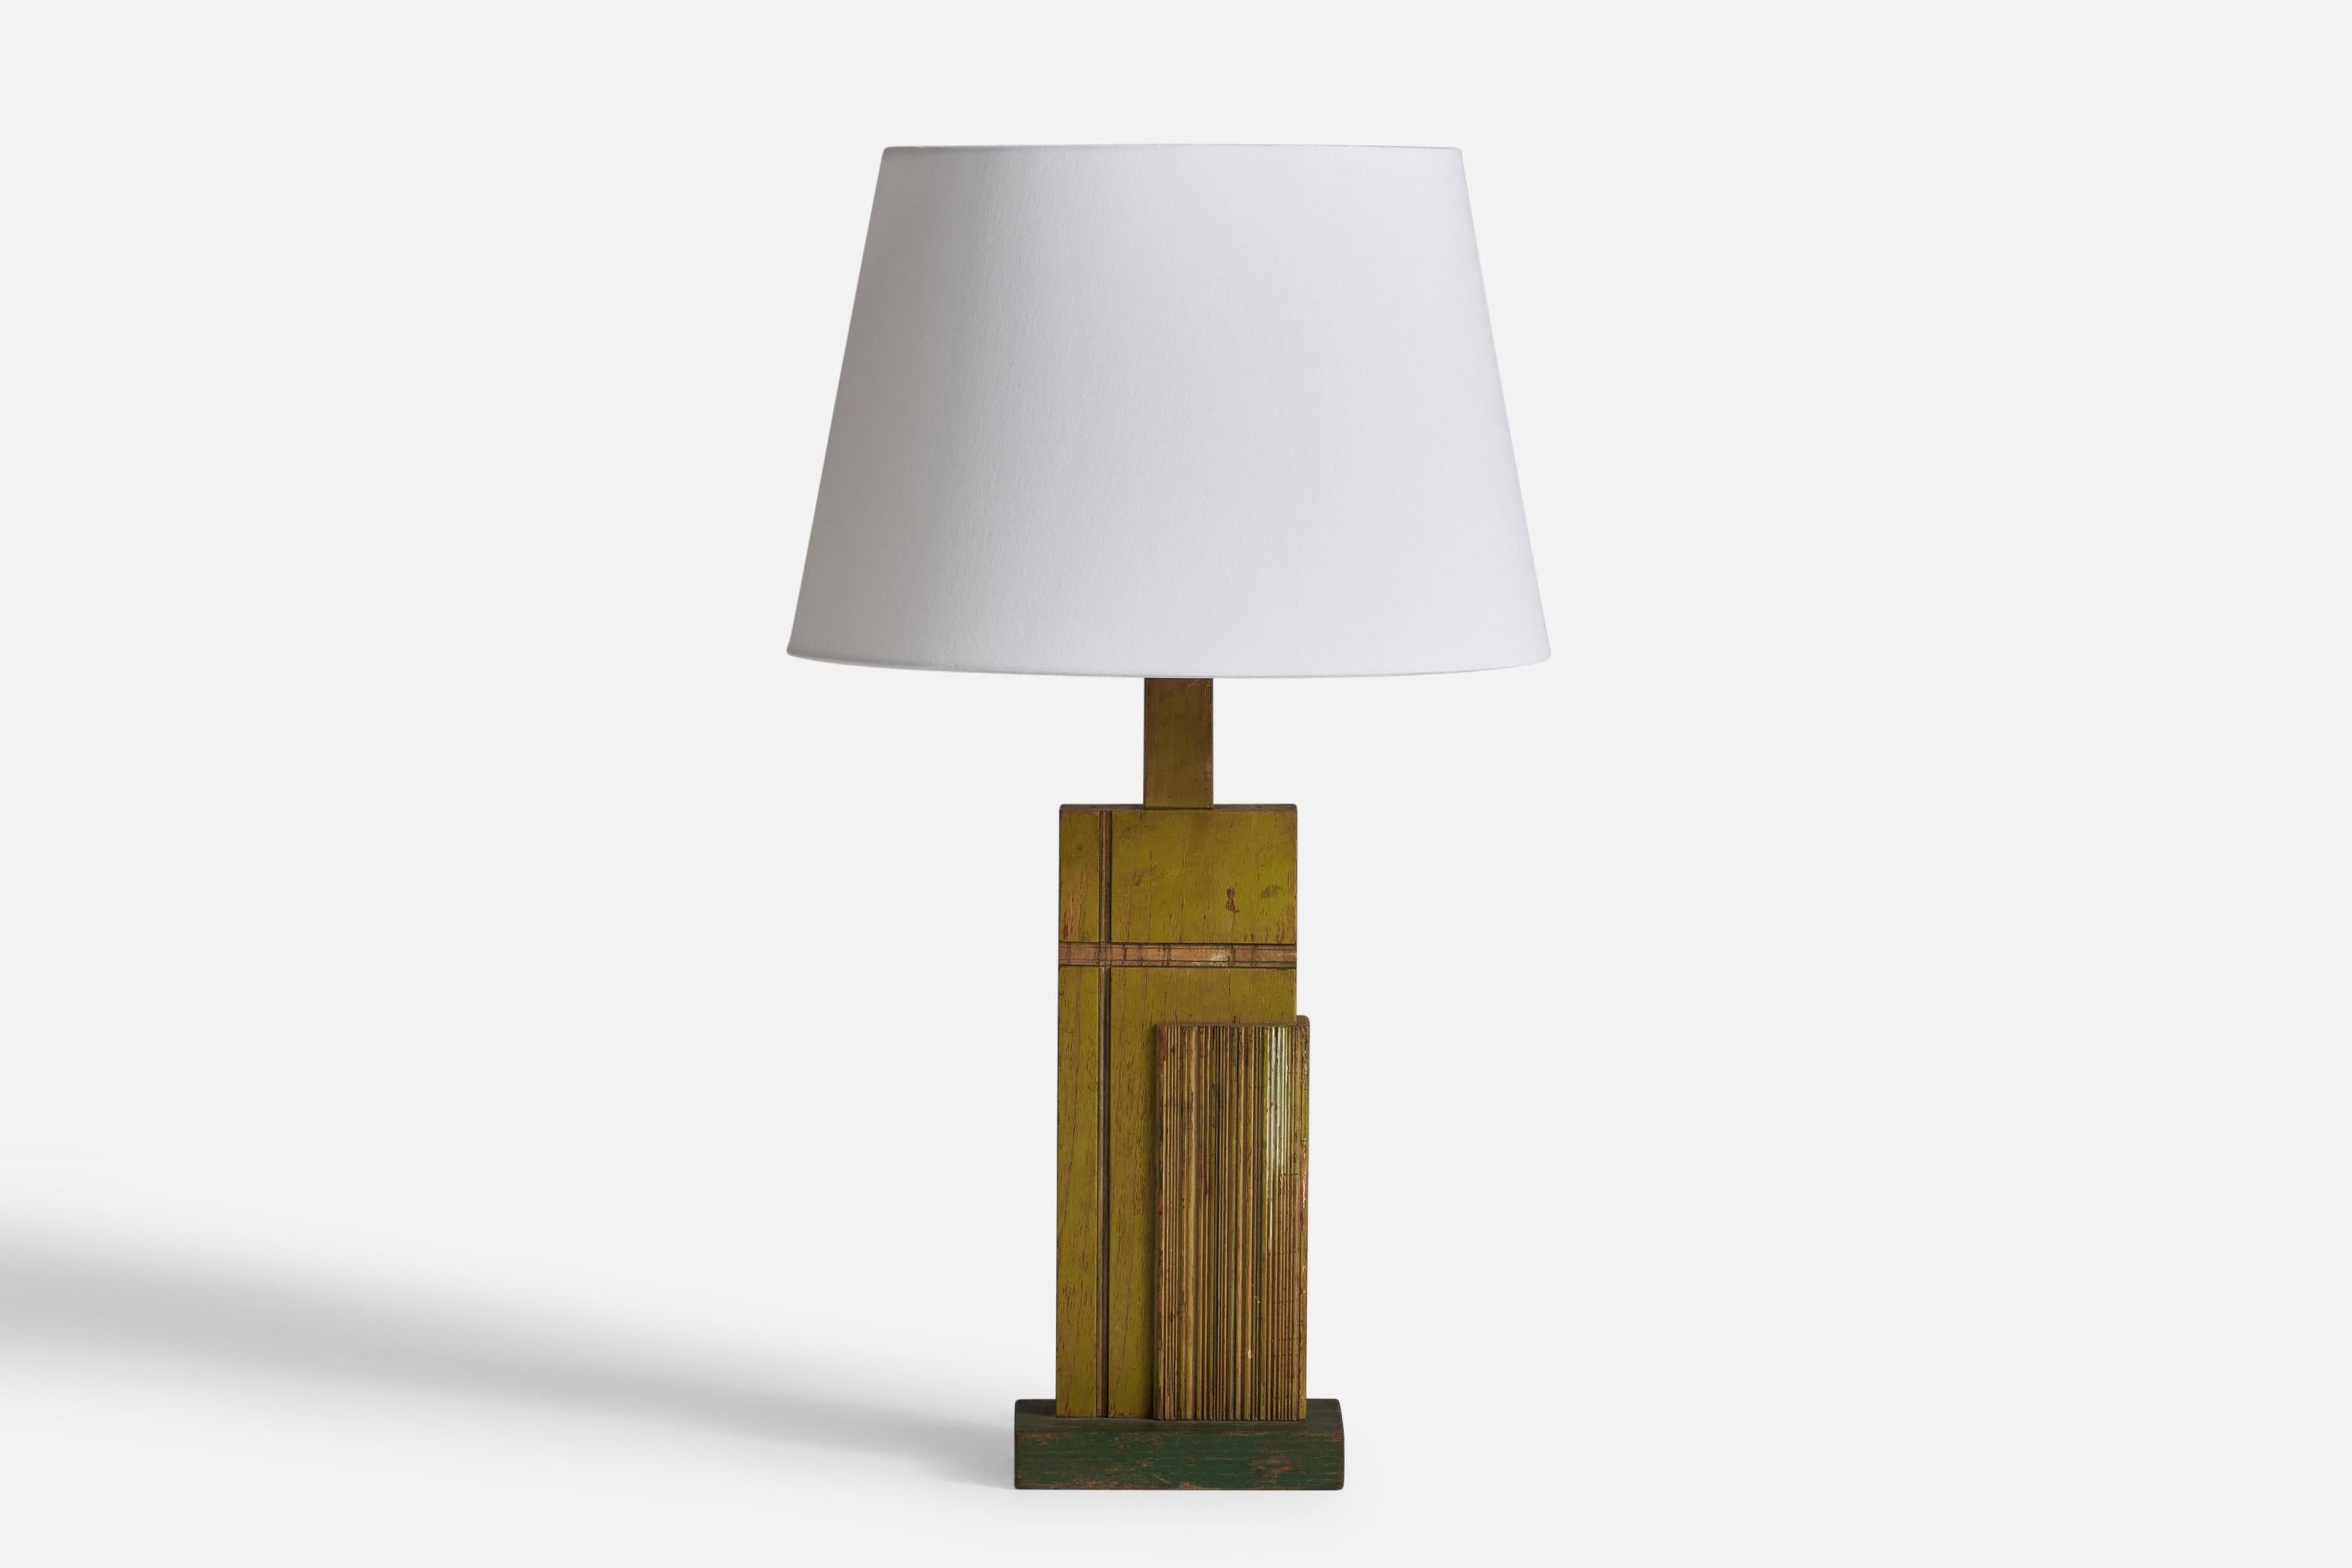 Tischlampe aus grün und goldfarben lackiertem Holz, entworfen und hergestellt in den USA, ca. 1950.

Abmessungen der Lampe (Zoll): 28